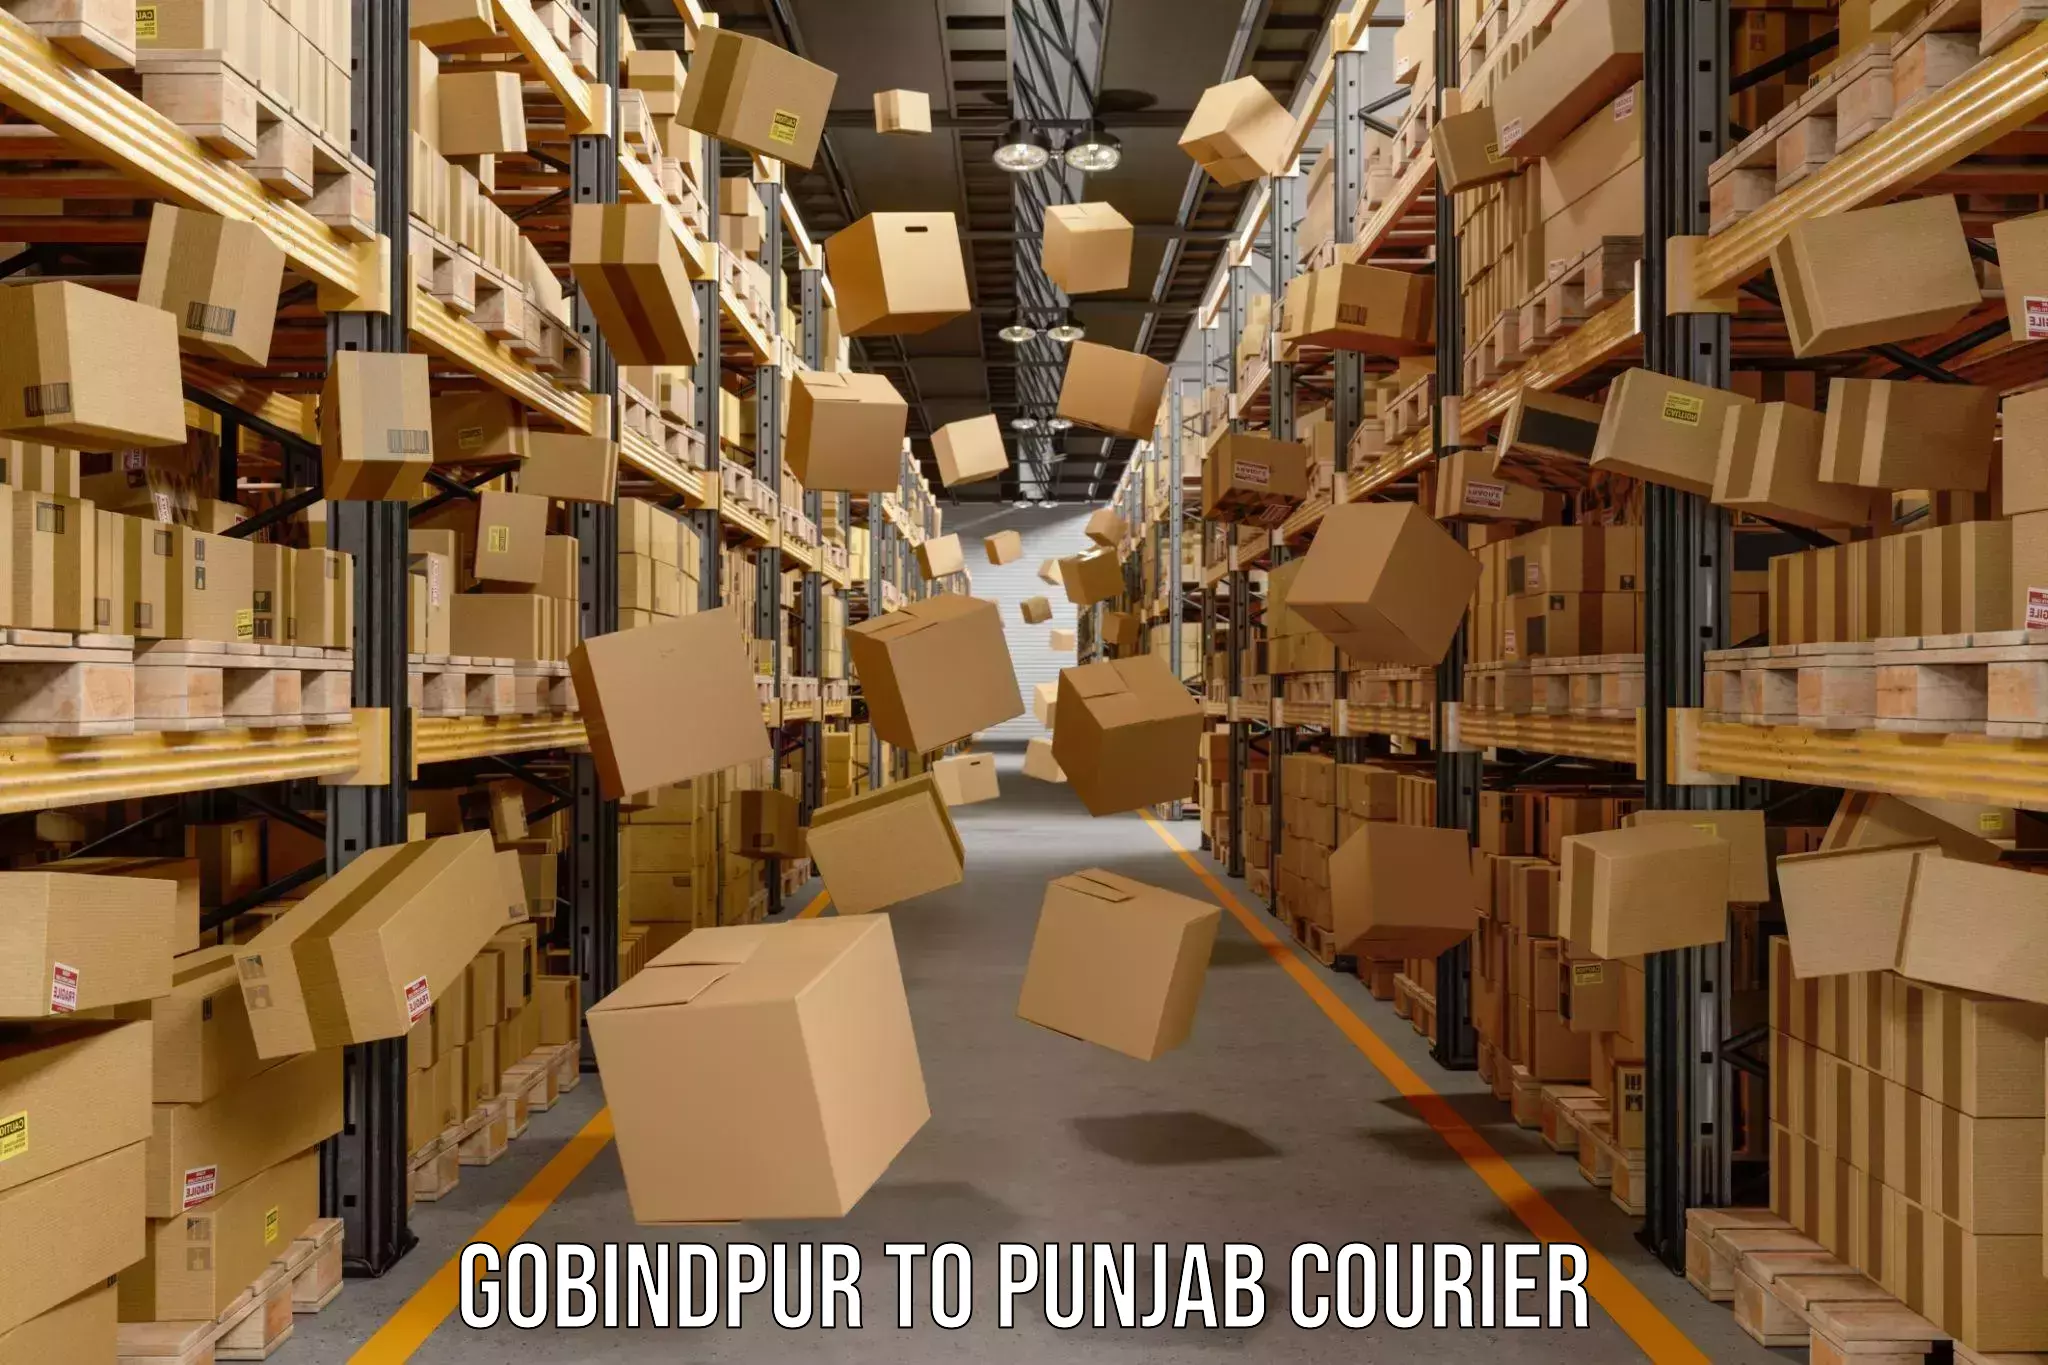 Enhanced tracking features Gobindpur to Central University of Punjab Bathinda